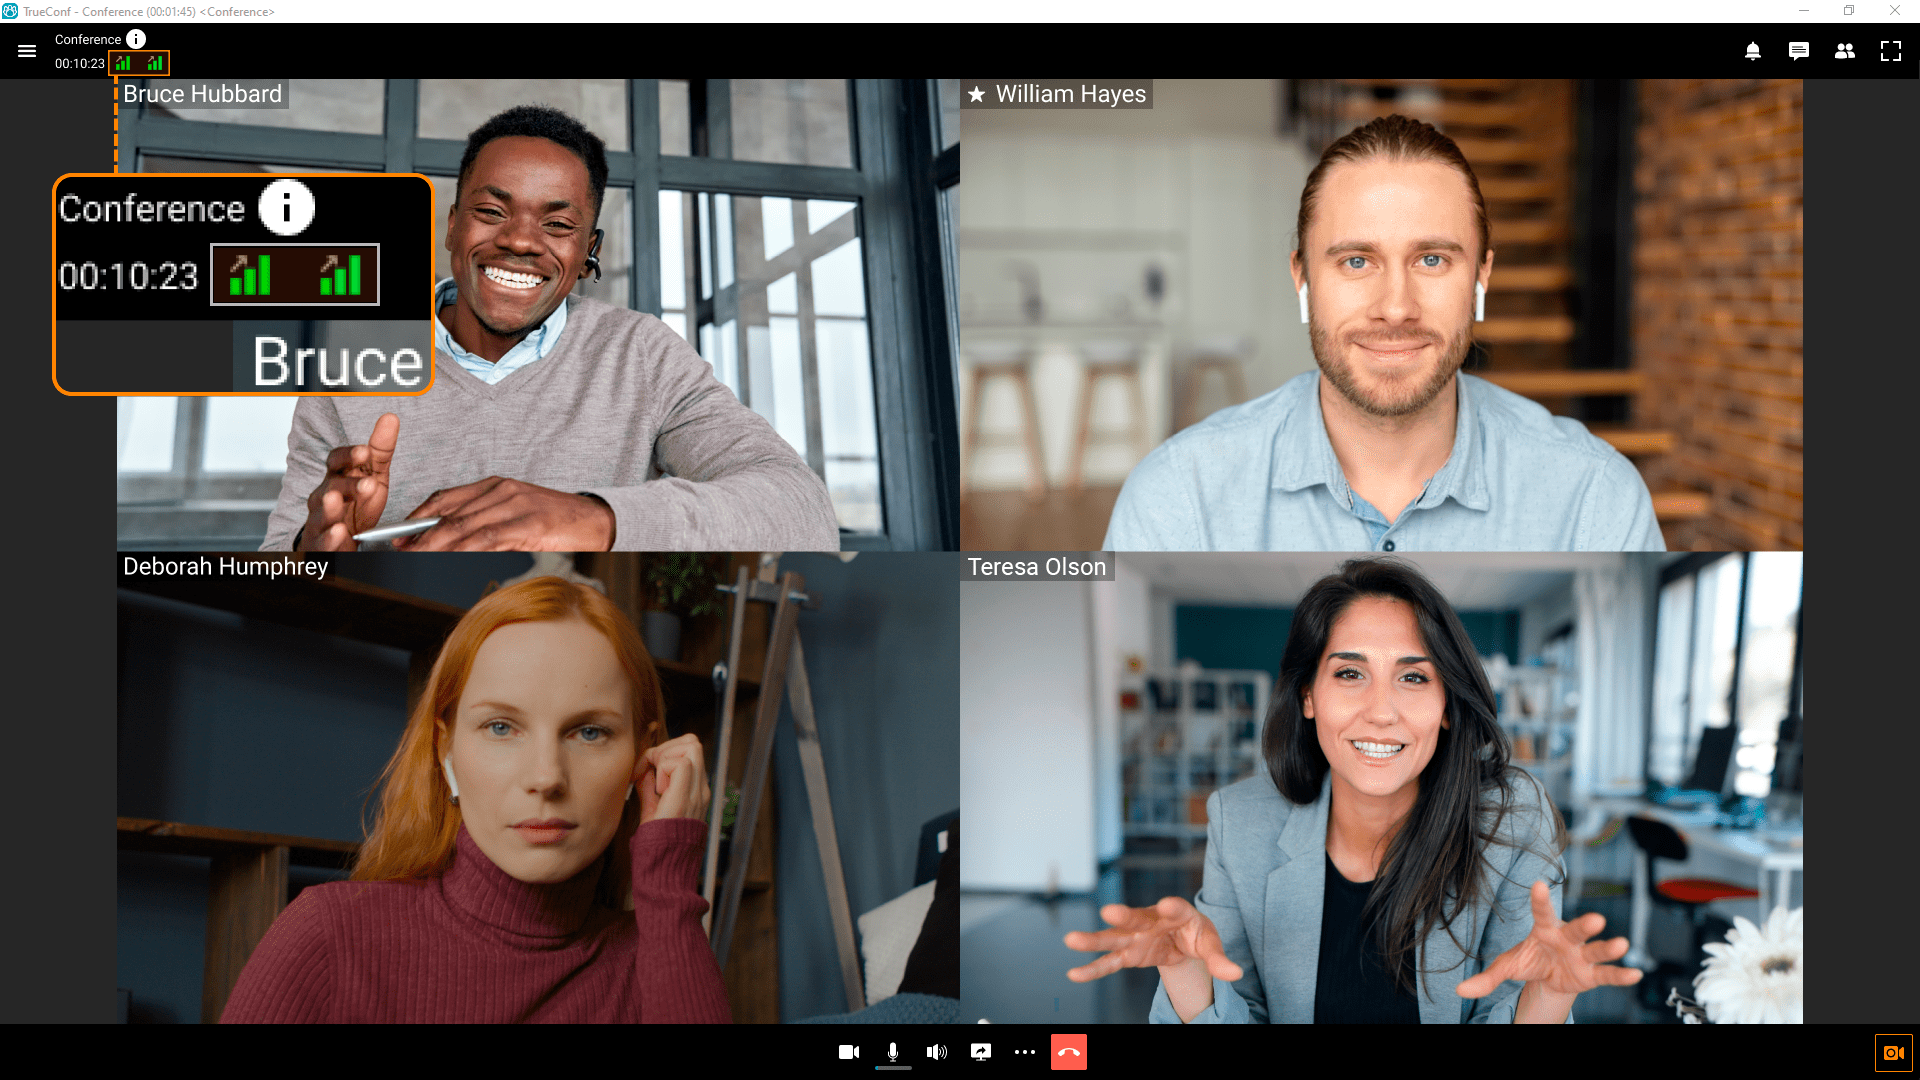 TrueConf 8: Next-Generation Team Messaging Application 22